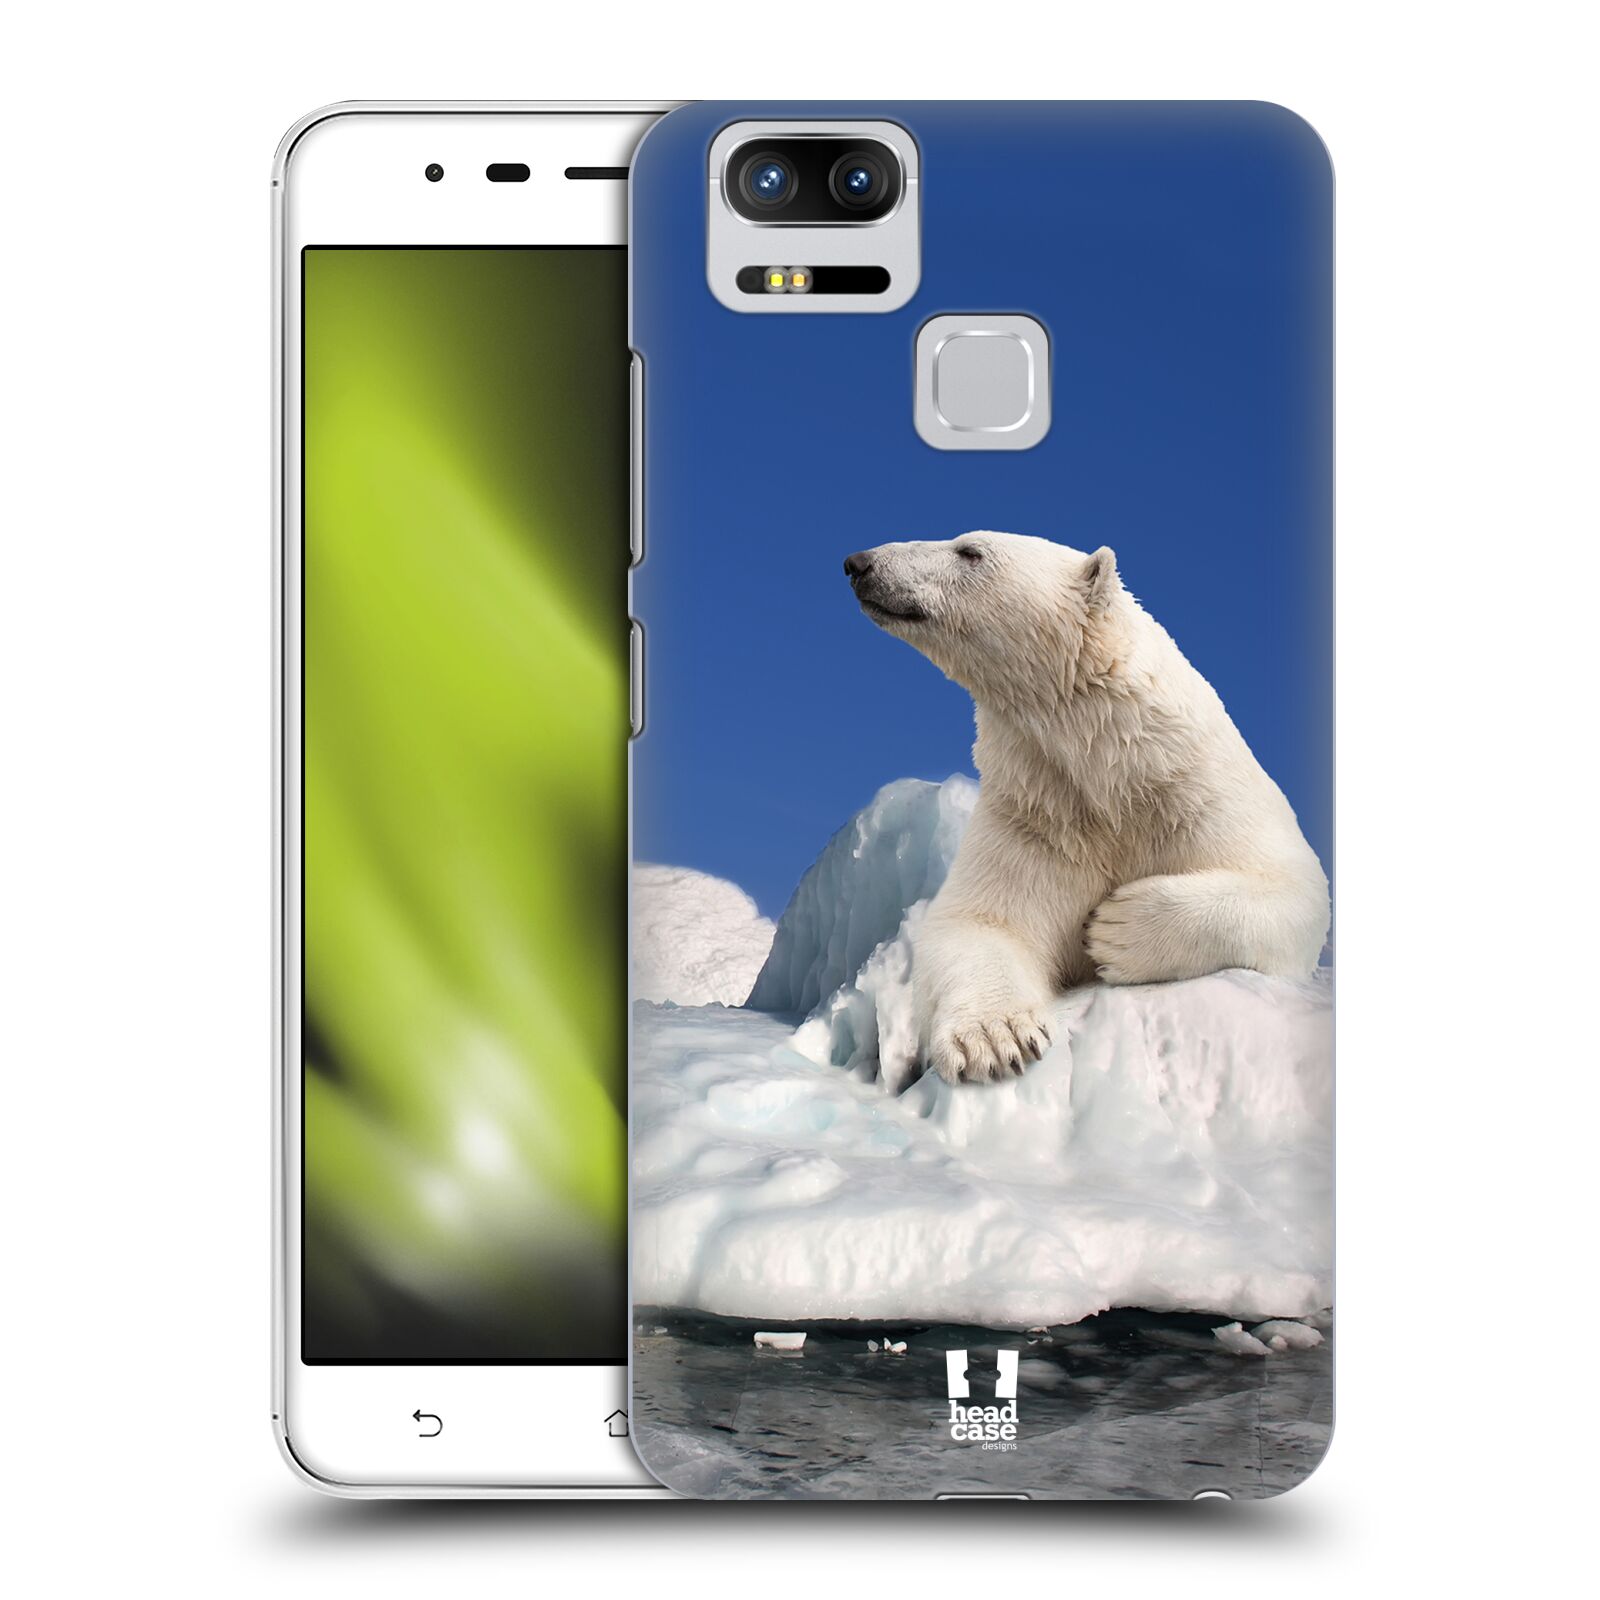 HEAD CASE plastový obal na mobil Asus Zenfone 3 Zoom ZE553KL vzor Divočina, Divoký život a zvířata foto LEDNÍ MEDVĚD NA LEDOVCI A NEBE MODRÁ